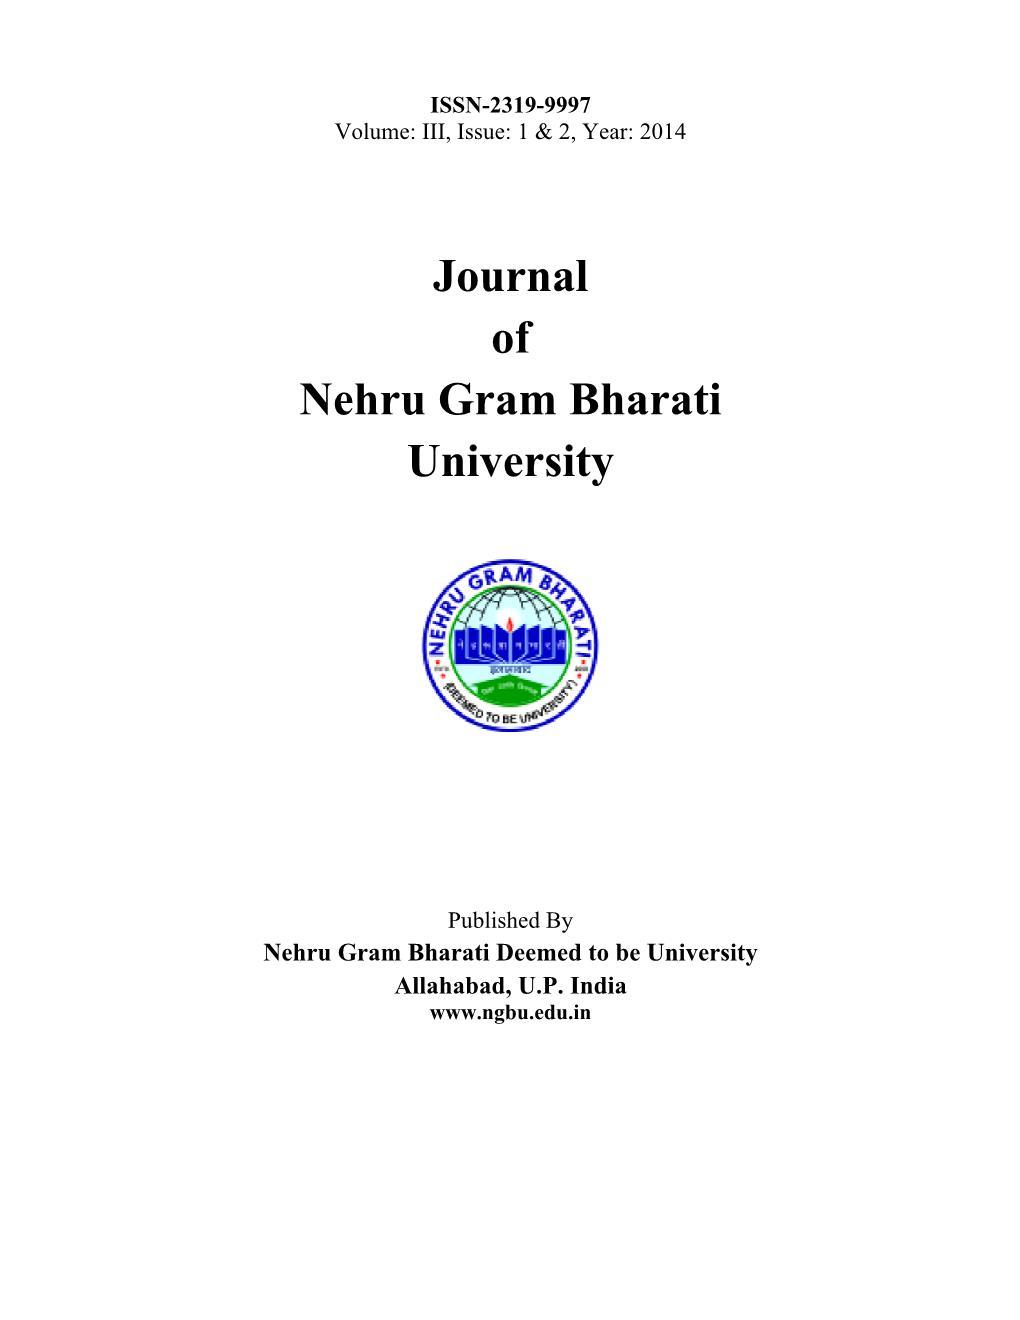 Journal of Nehru Gram Bharati University